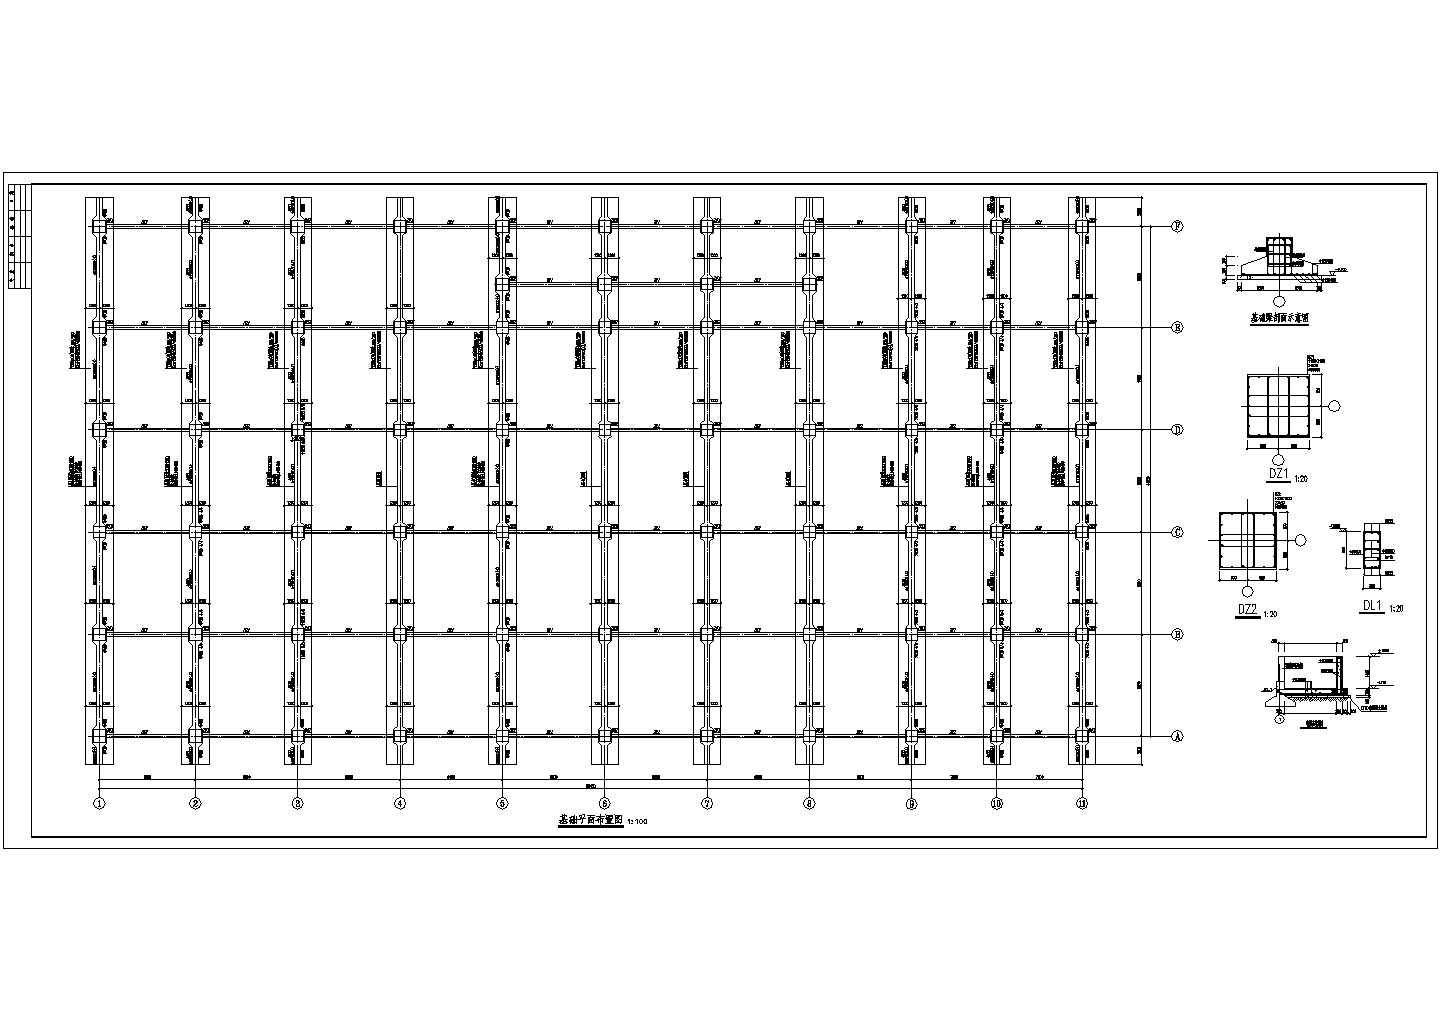 某仓商贸有限公司钢结构超市结构设计施工图